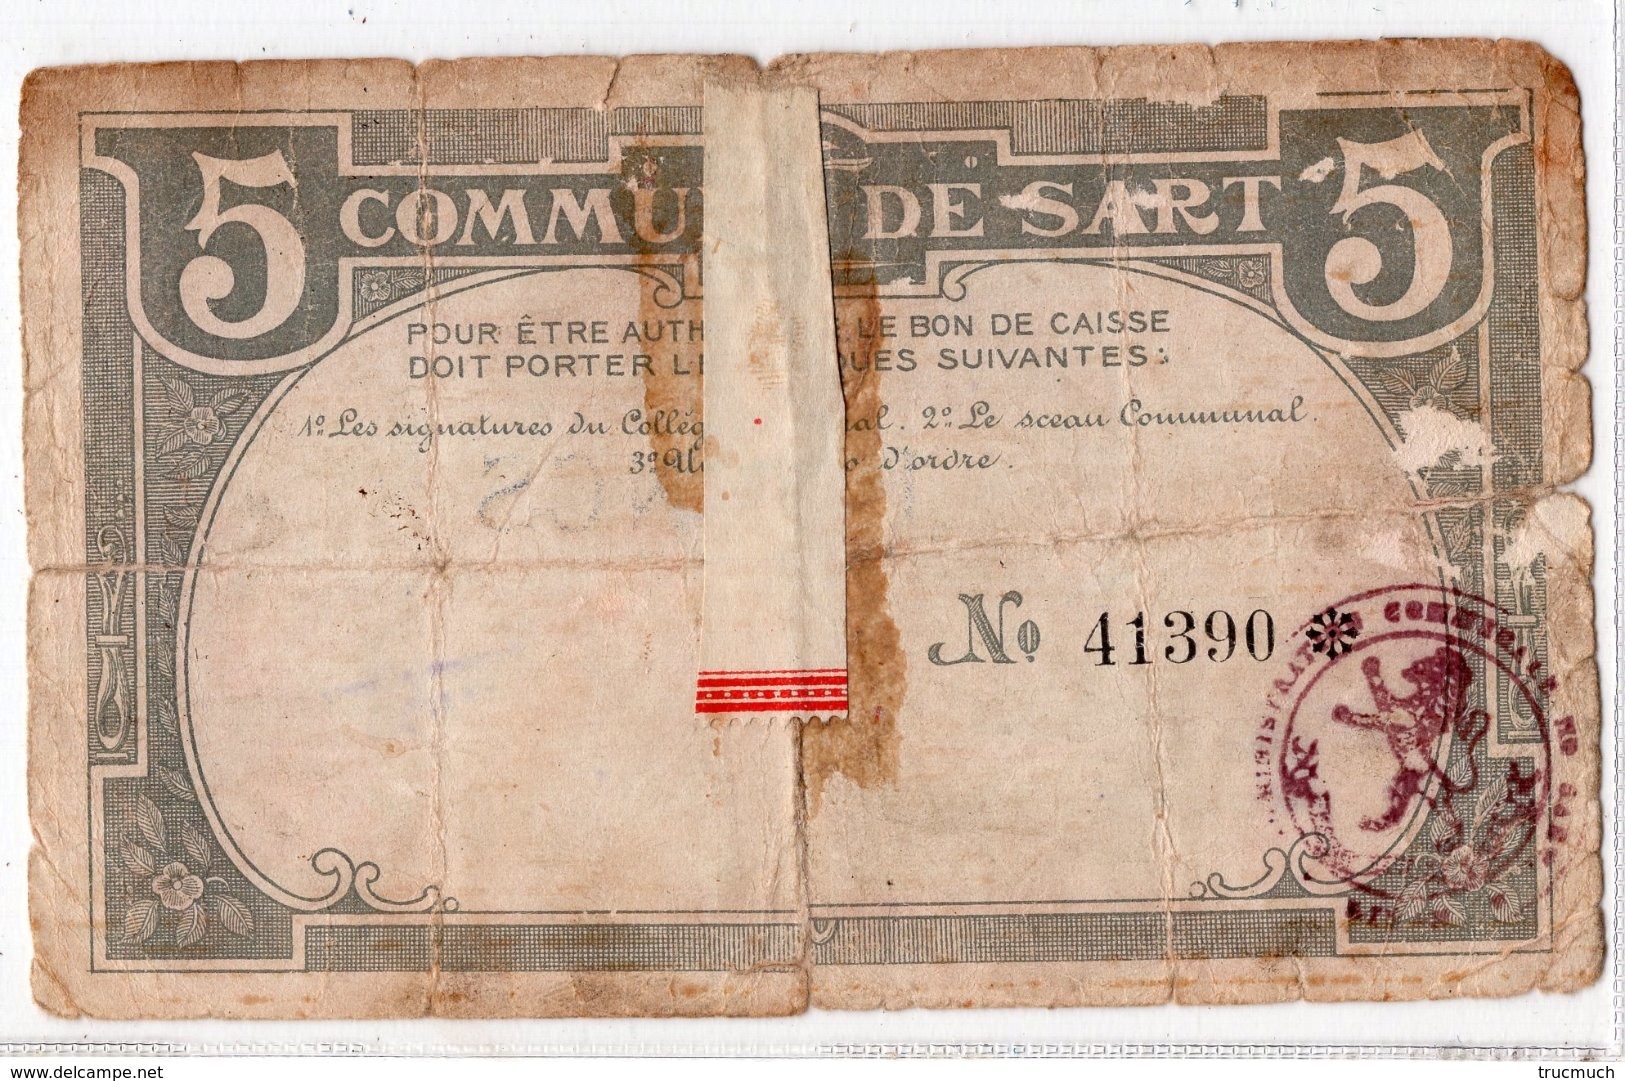 BON DE CAISSE   -  Billet De Nécessité  -  SART (LEZ SPA) -  5 Francs - 15 Février 1915  -  *RARE* - 5 Franchi